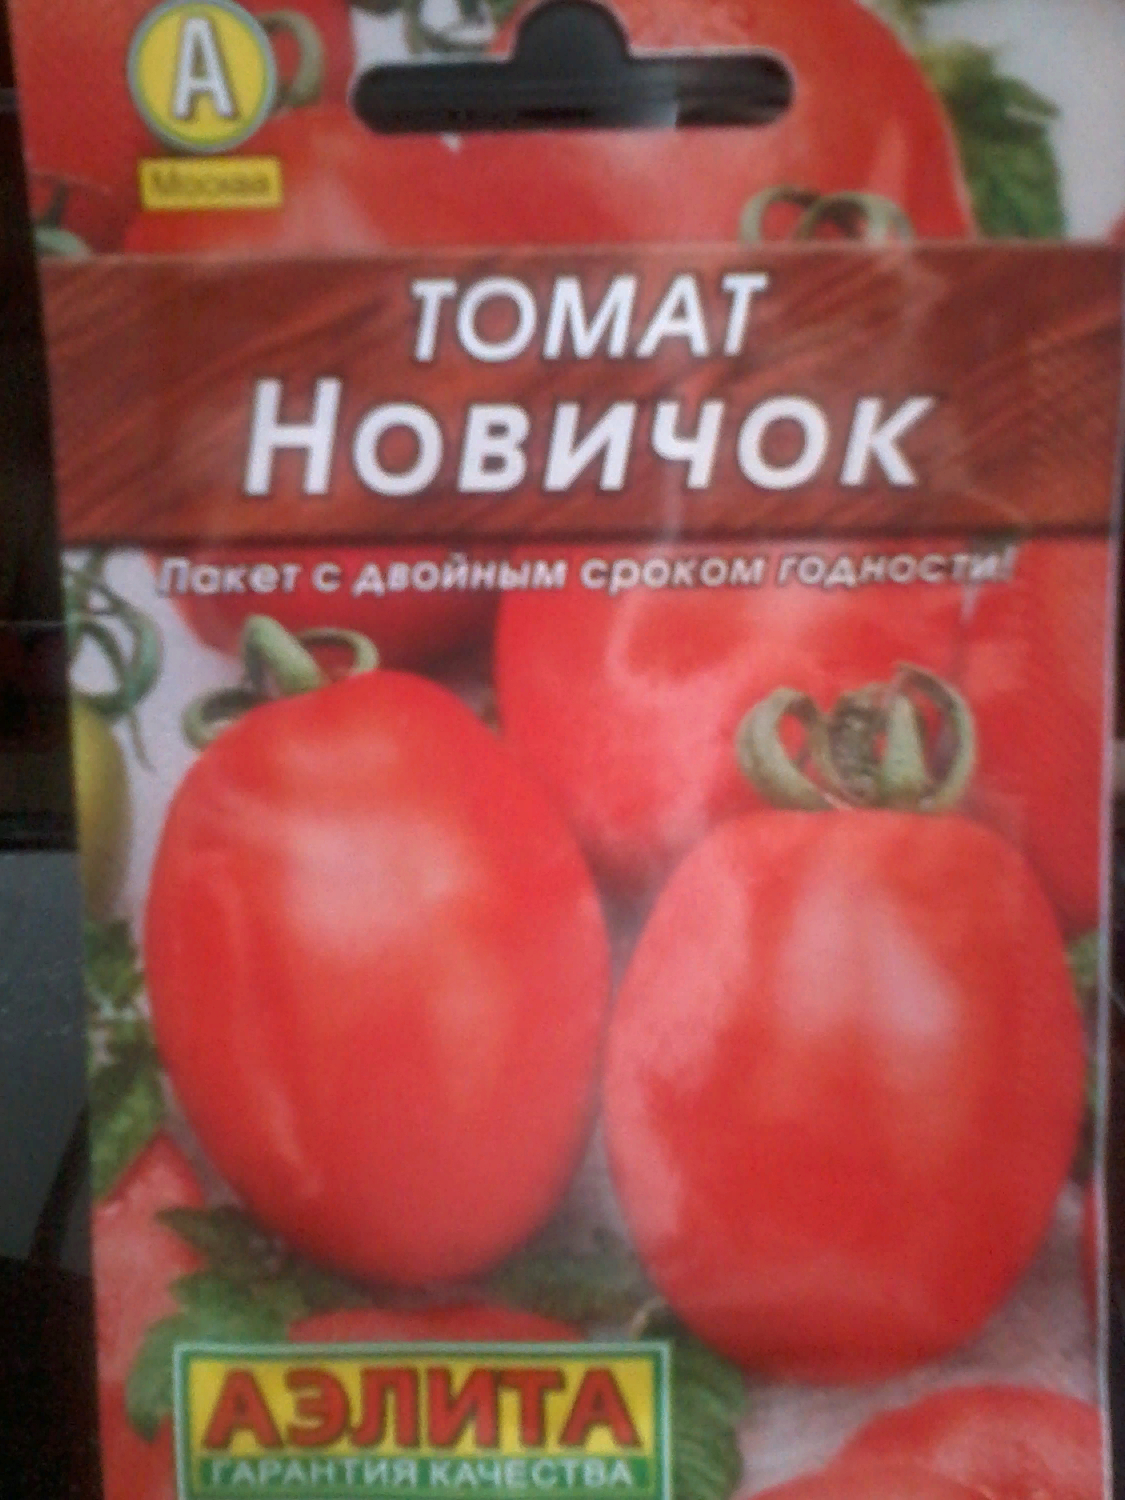 Производитель семян томата семен решетников отзывы